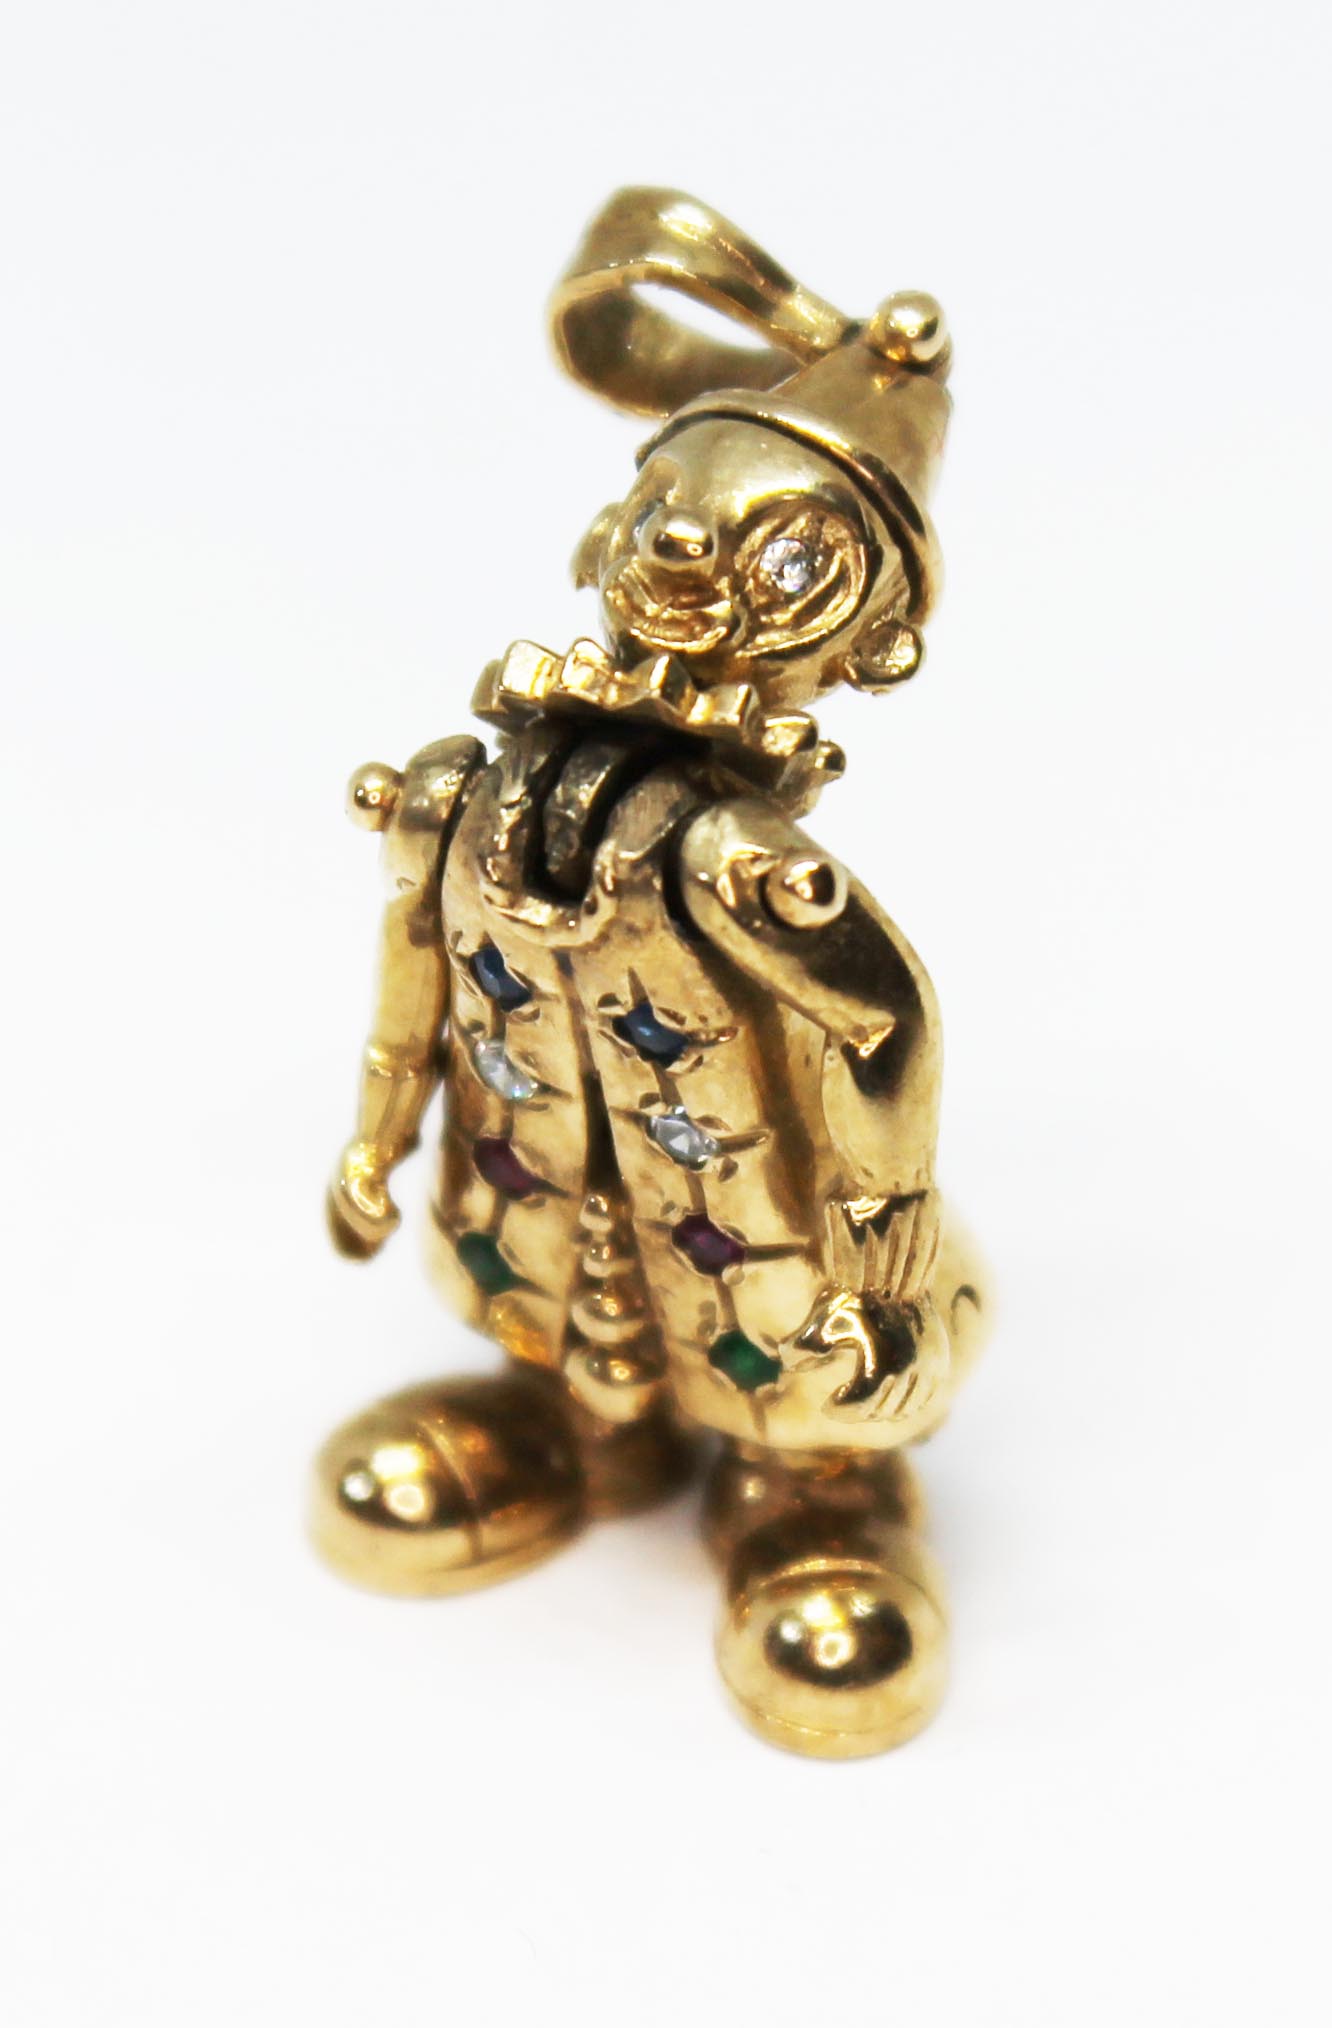 A hallmarked 9ct gold novelty clown pendant, length 42mm, gross wt. 6.8g.